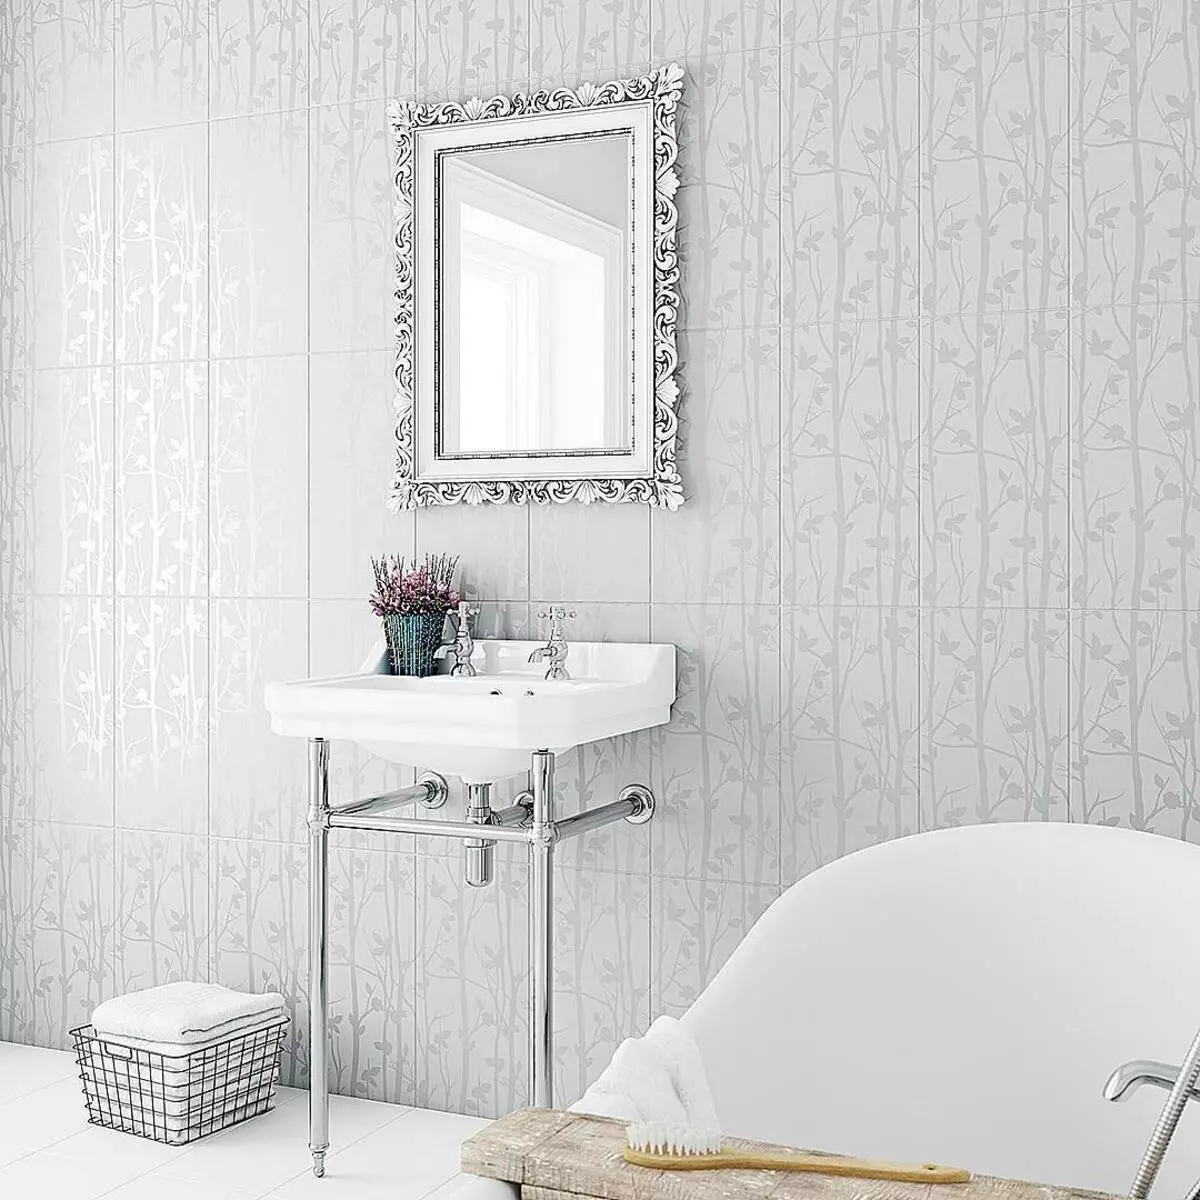 دکور حمام طراحی کاشی دیوار زیبا با عکس الگوی گیاهی